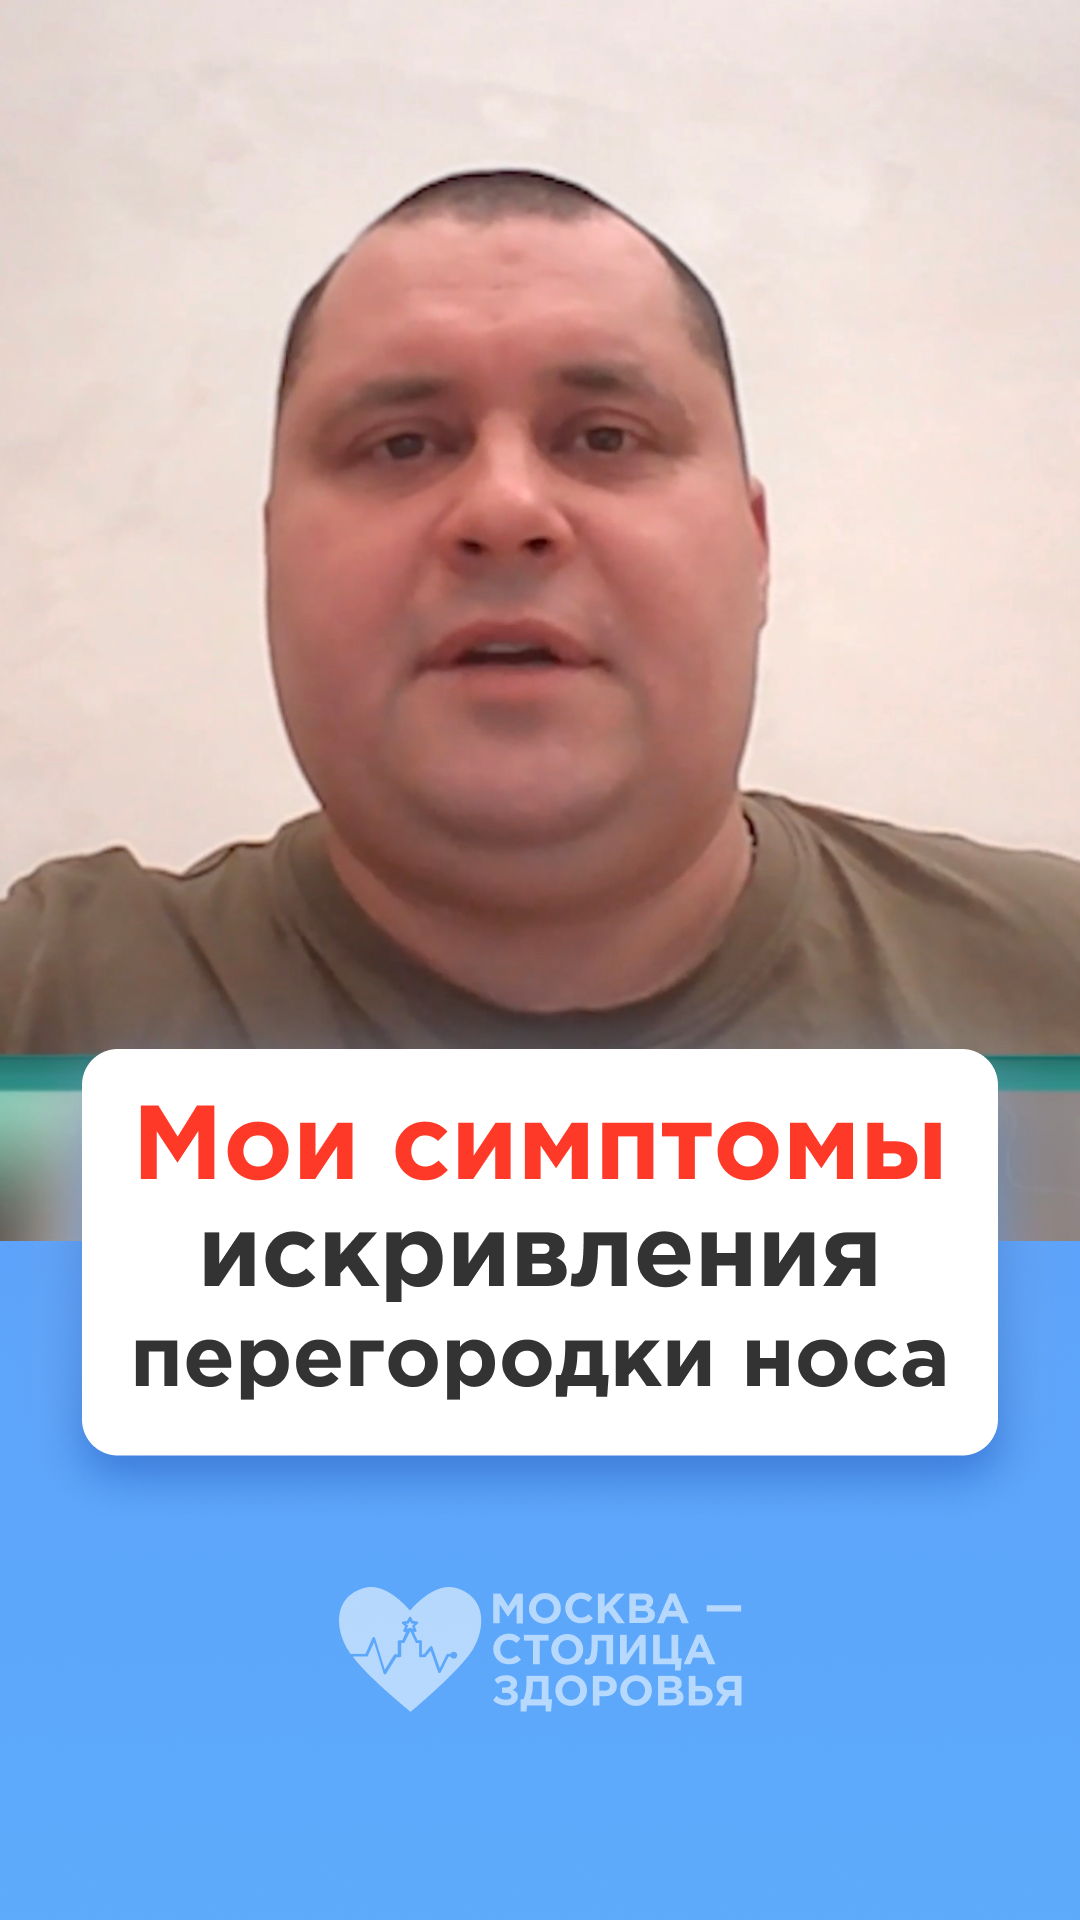 Мои симптомы искривления перегородки носа — как я сделал операцию бесплатно по ОМС в Москве